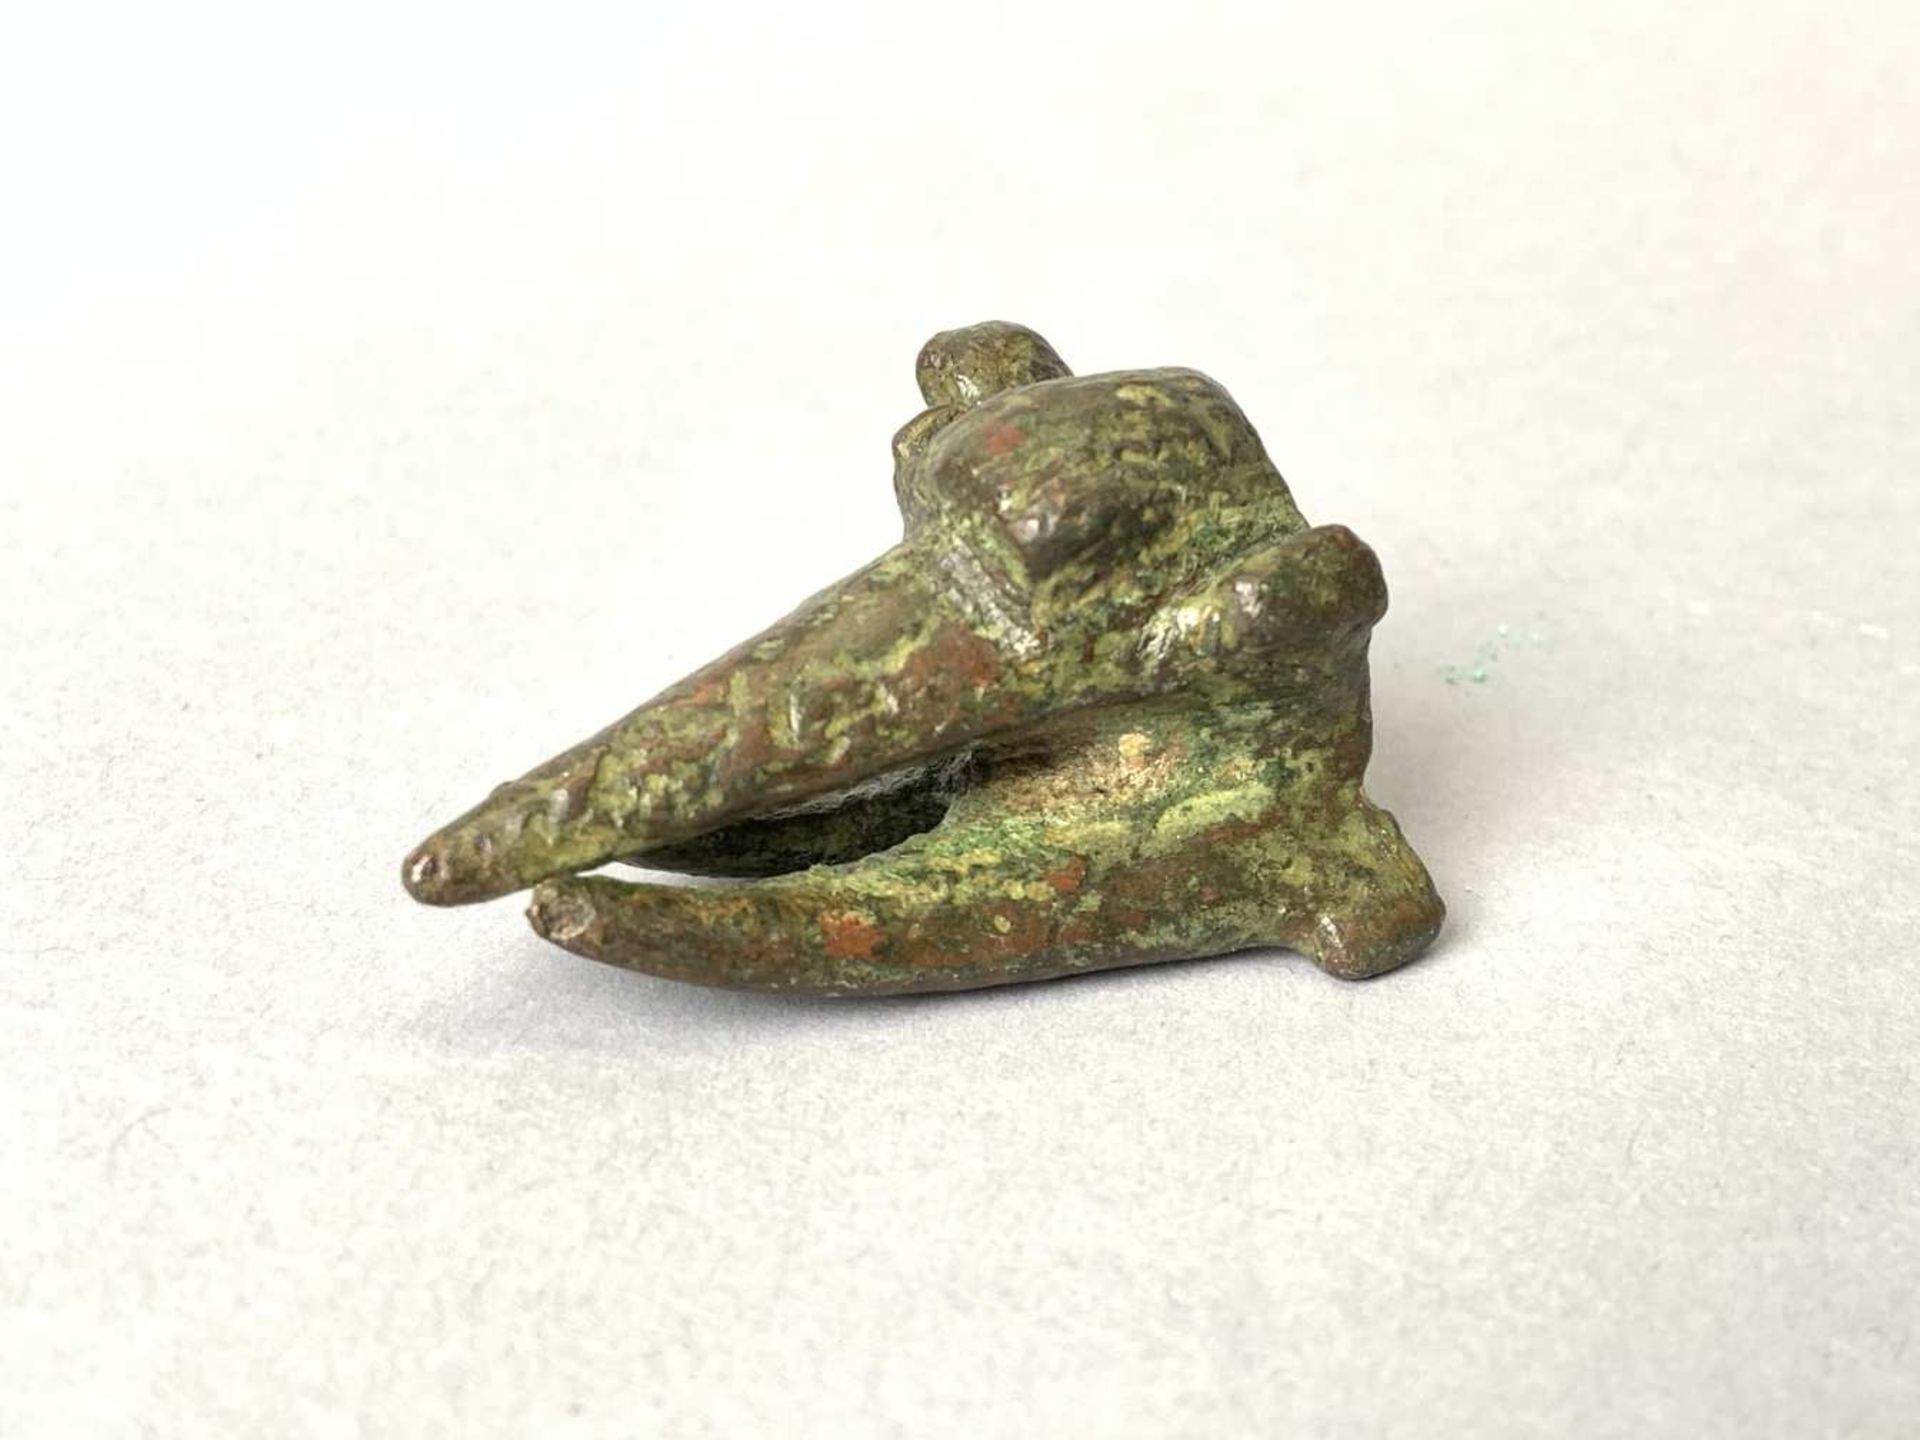 Tête d'échassier en bronze. Longueur 4,8 cm. Epoque romaine II - IIIème siècle après J-C.